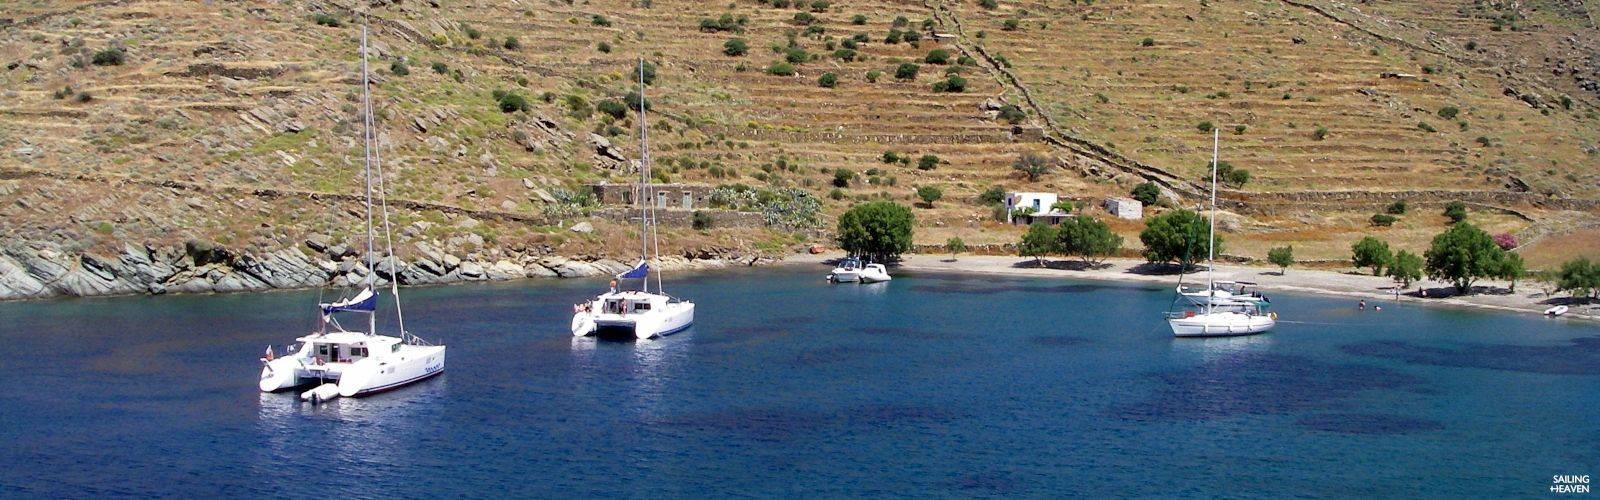 Vacances en voilier vers les îles grecques faciles à vivre